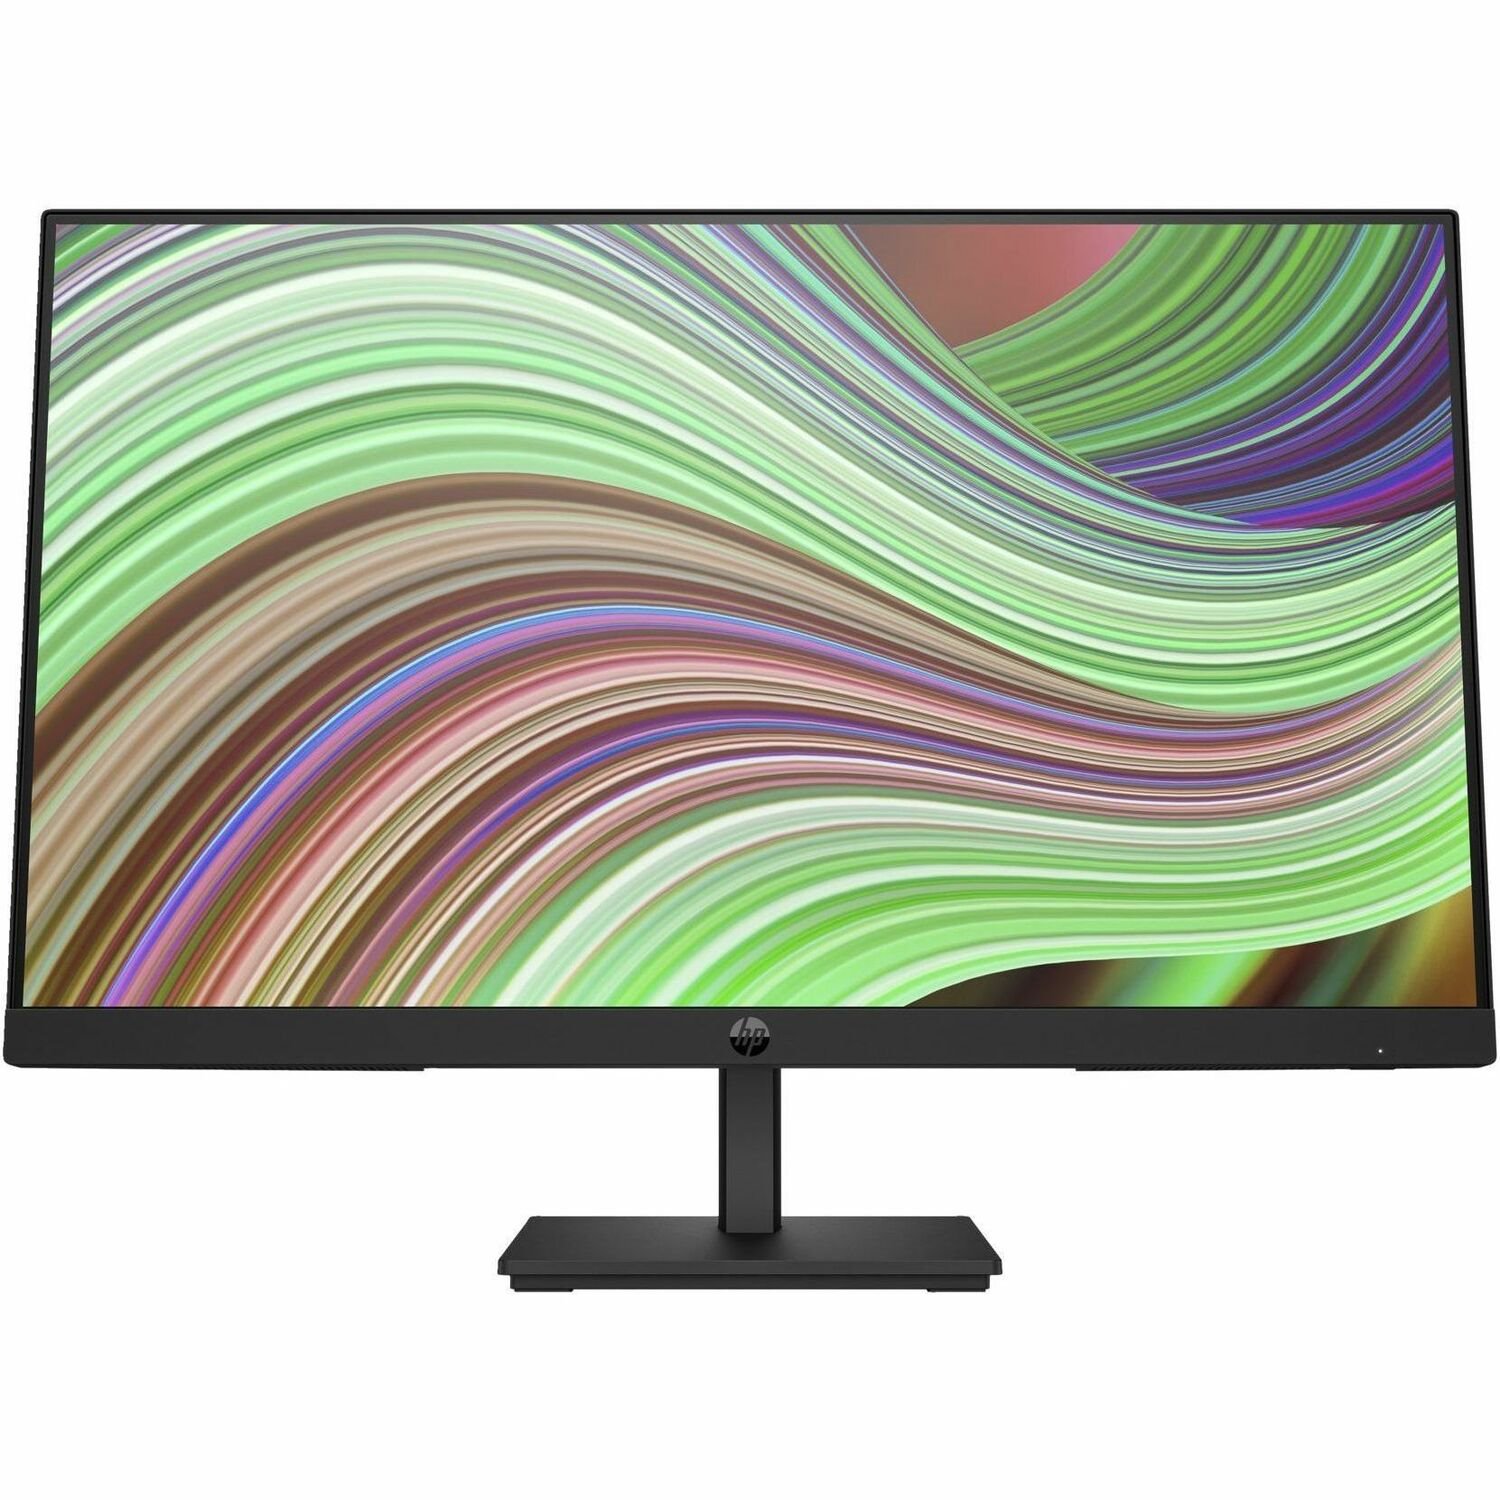 HP P24v G5 24" Class Full HD LCD Monitor - 16:9 - Black